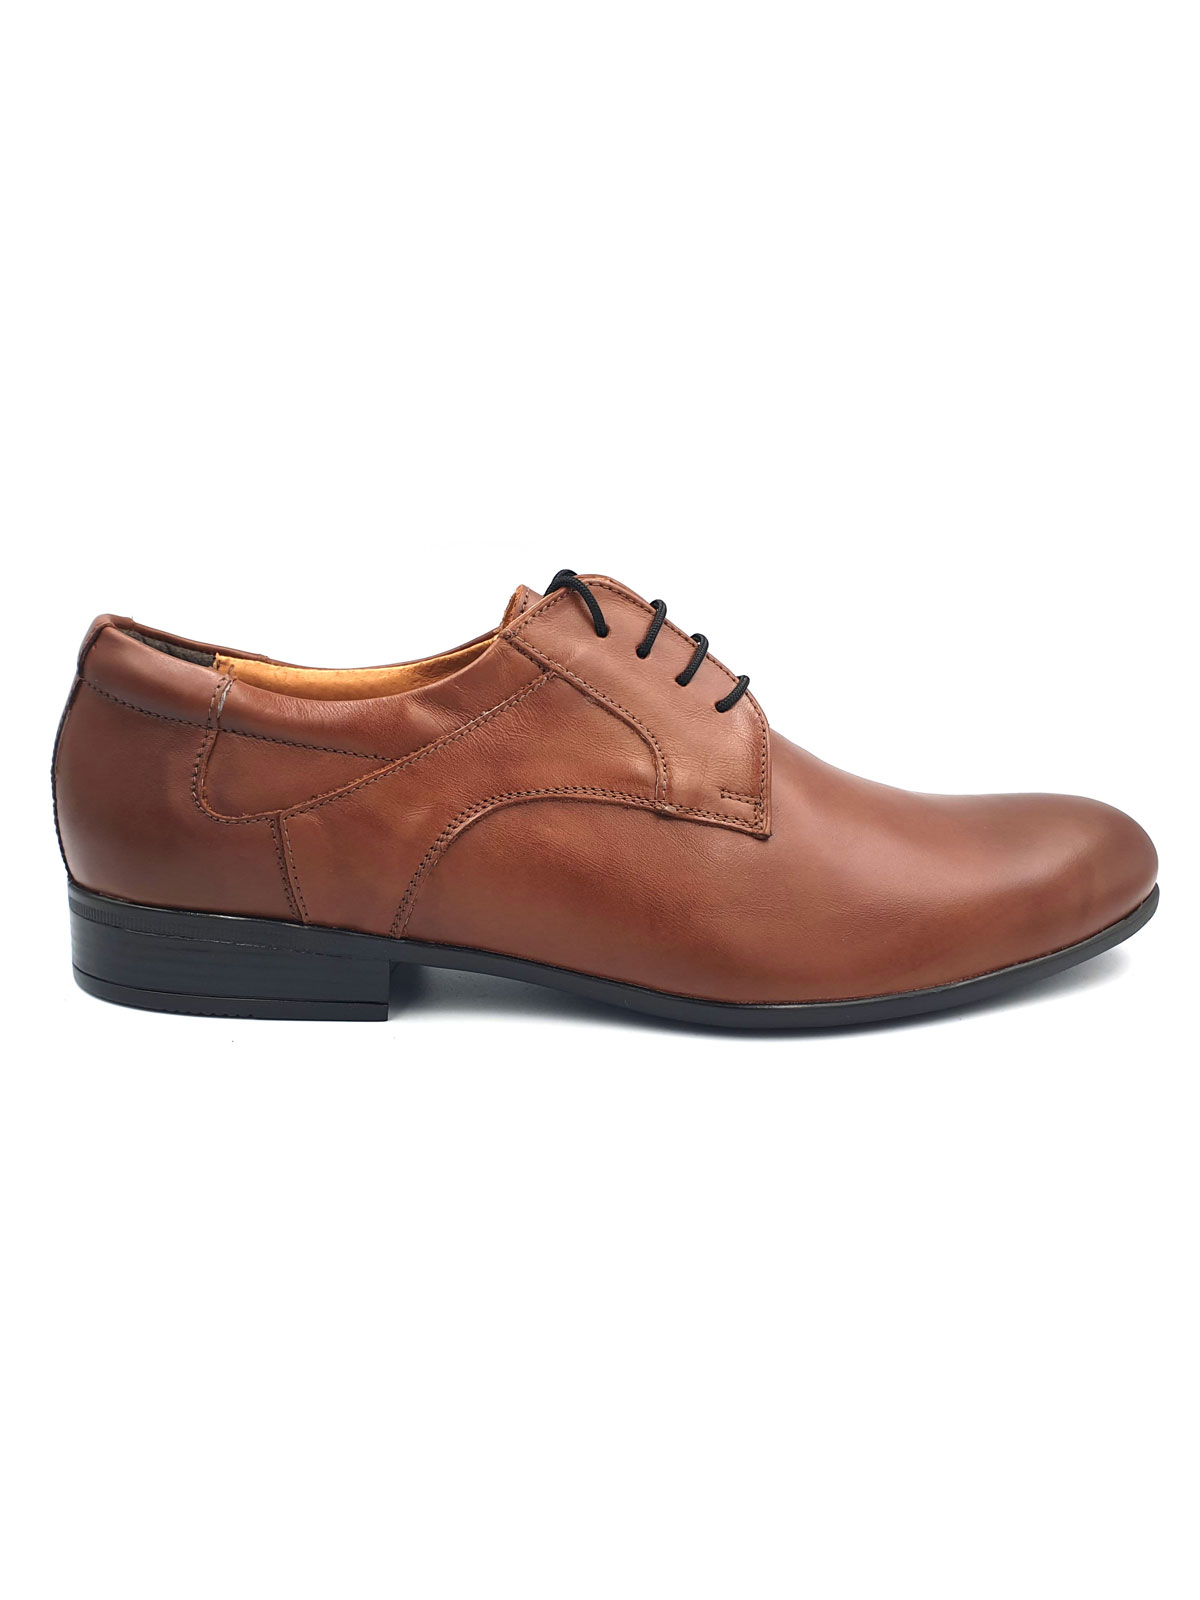 Elegant leather shoes - 81072 - € 83.24 img2